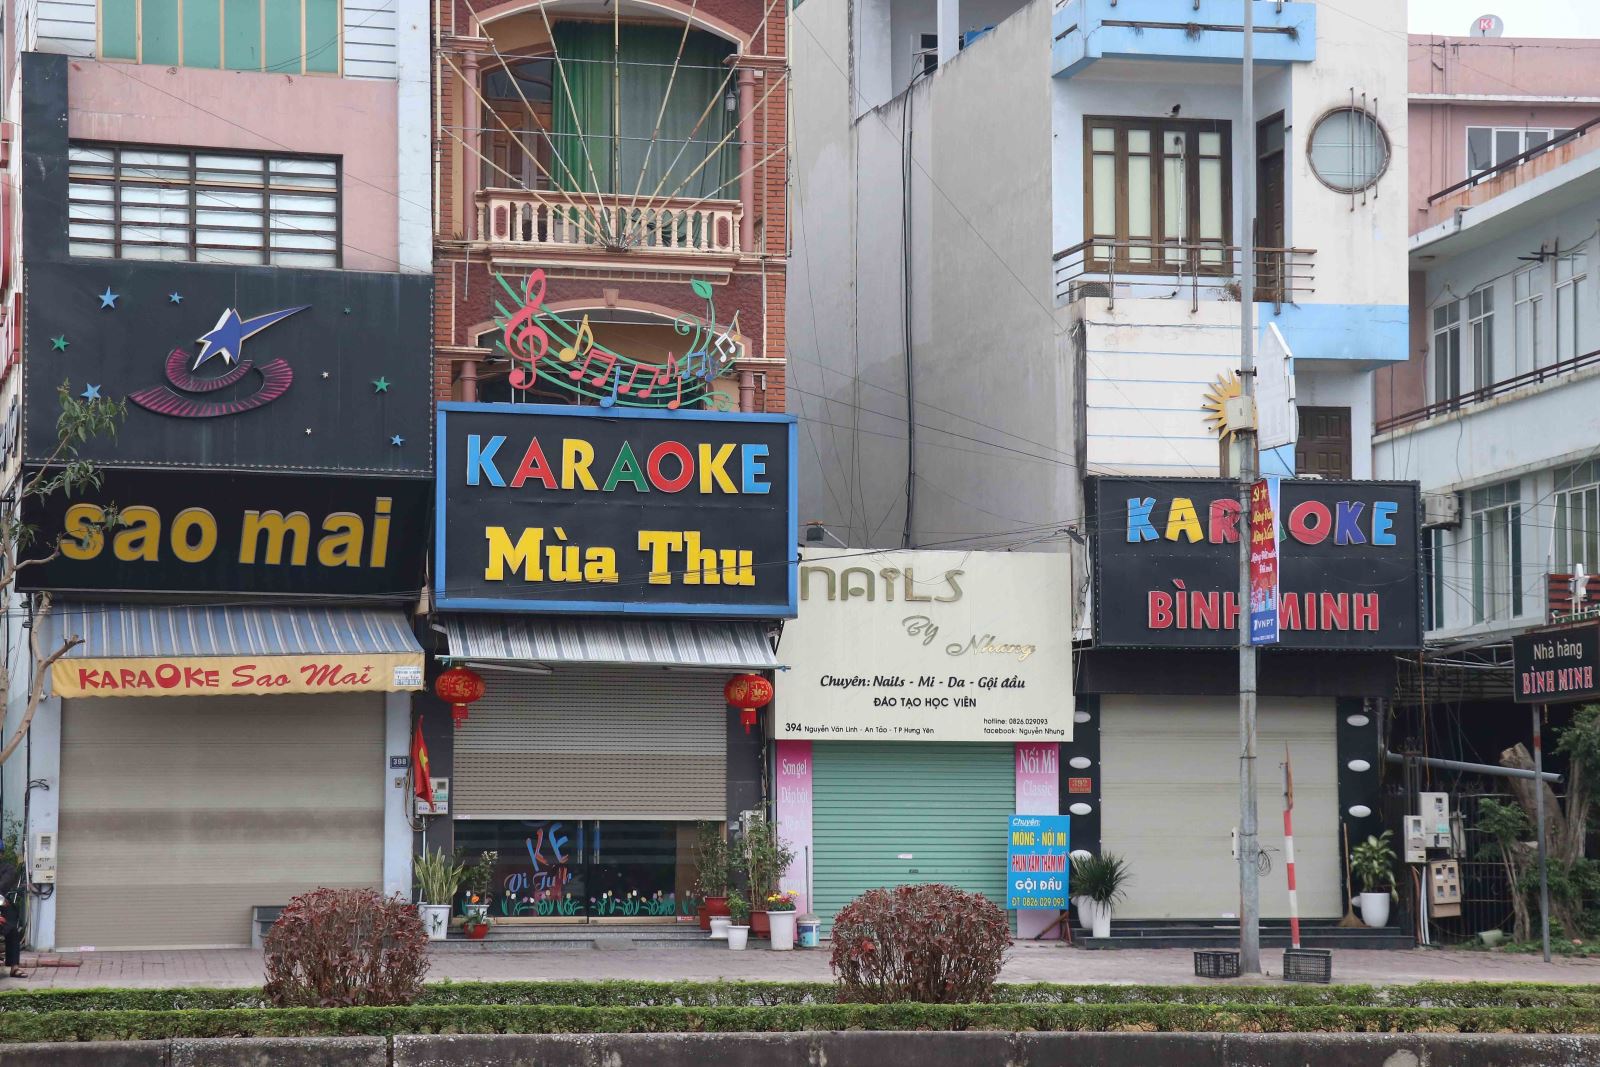  Các quán karaoke đoạn Chợ Gạo, thành phố Hưng Yên (Hưng Yên) đóng cửa chấp hành nghiêm quy định chống dịch COVID-19. Ảnh: Đinh Tuấn/TTXVN